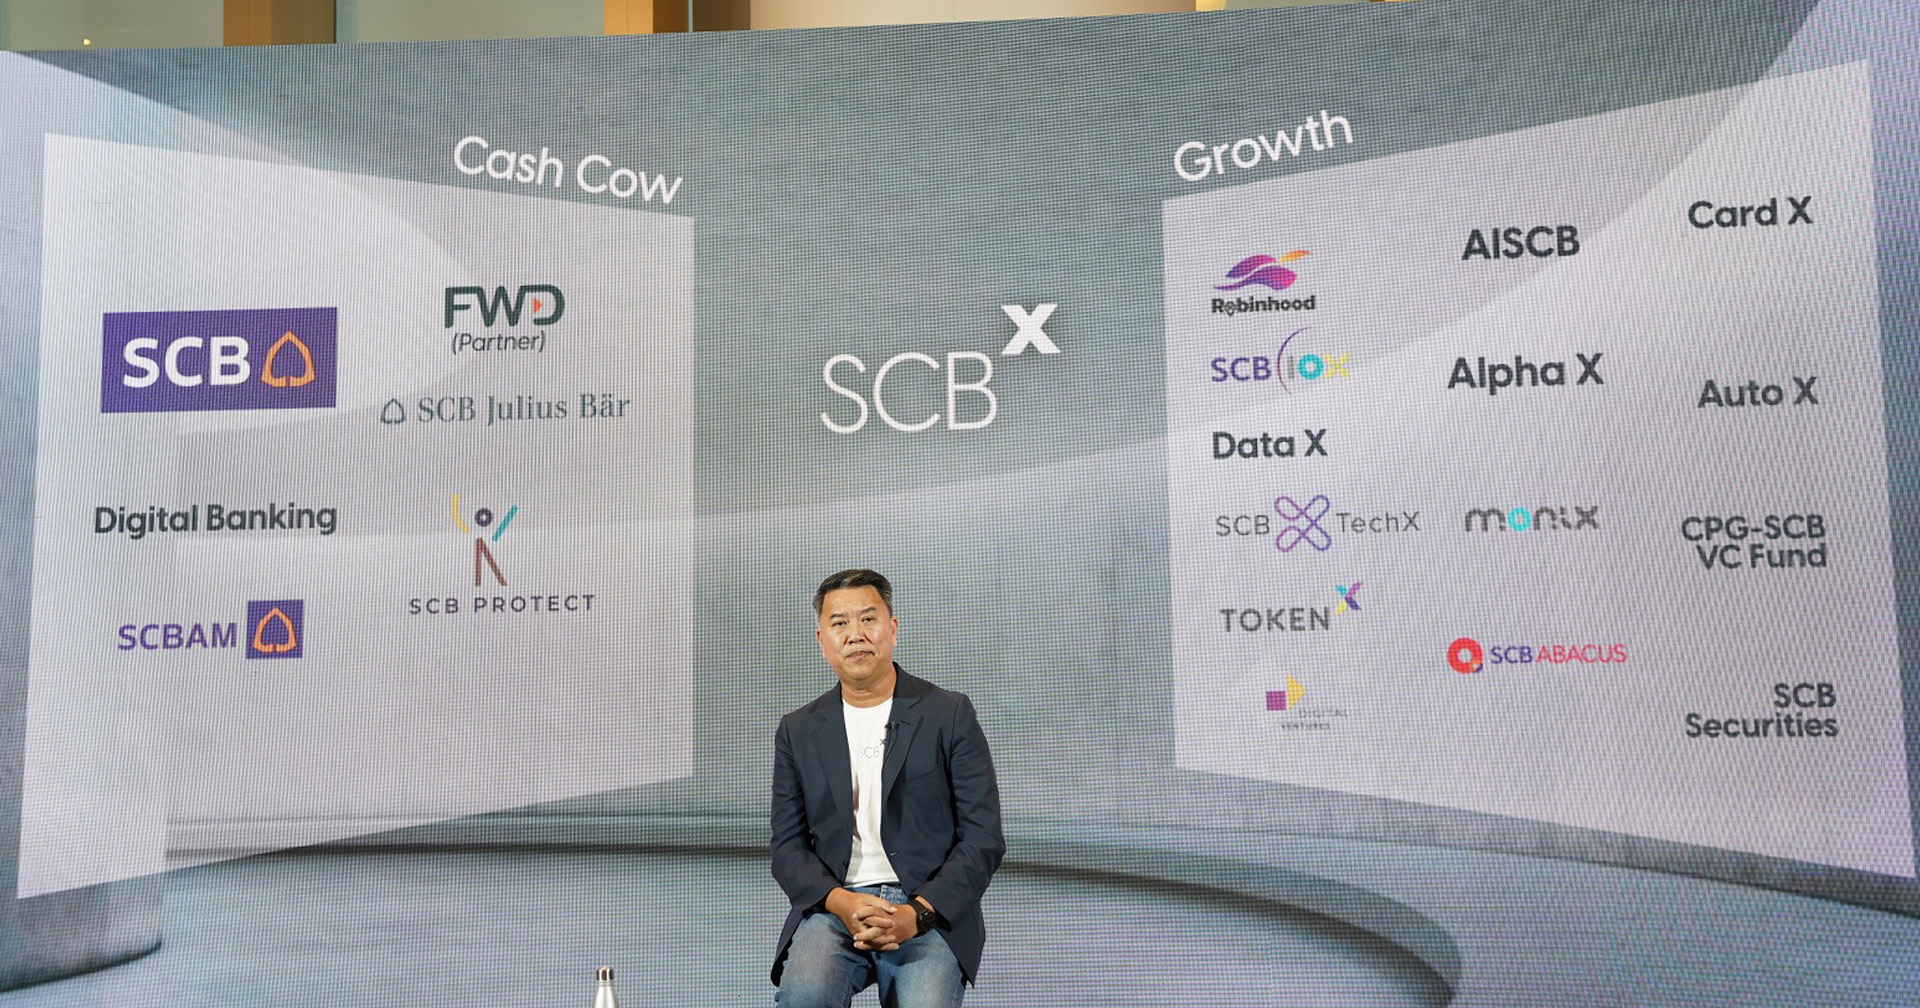 ไทยพาณิชย์ตั้งบริษัทแม่ใหม่ชื่อ SCBx พร้อมลุยเทคโนโลยีการเงิน และจับมือ CP ตั้งกองทุน Venture Capital